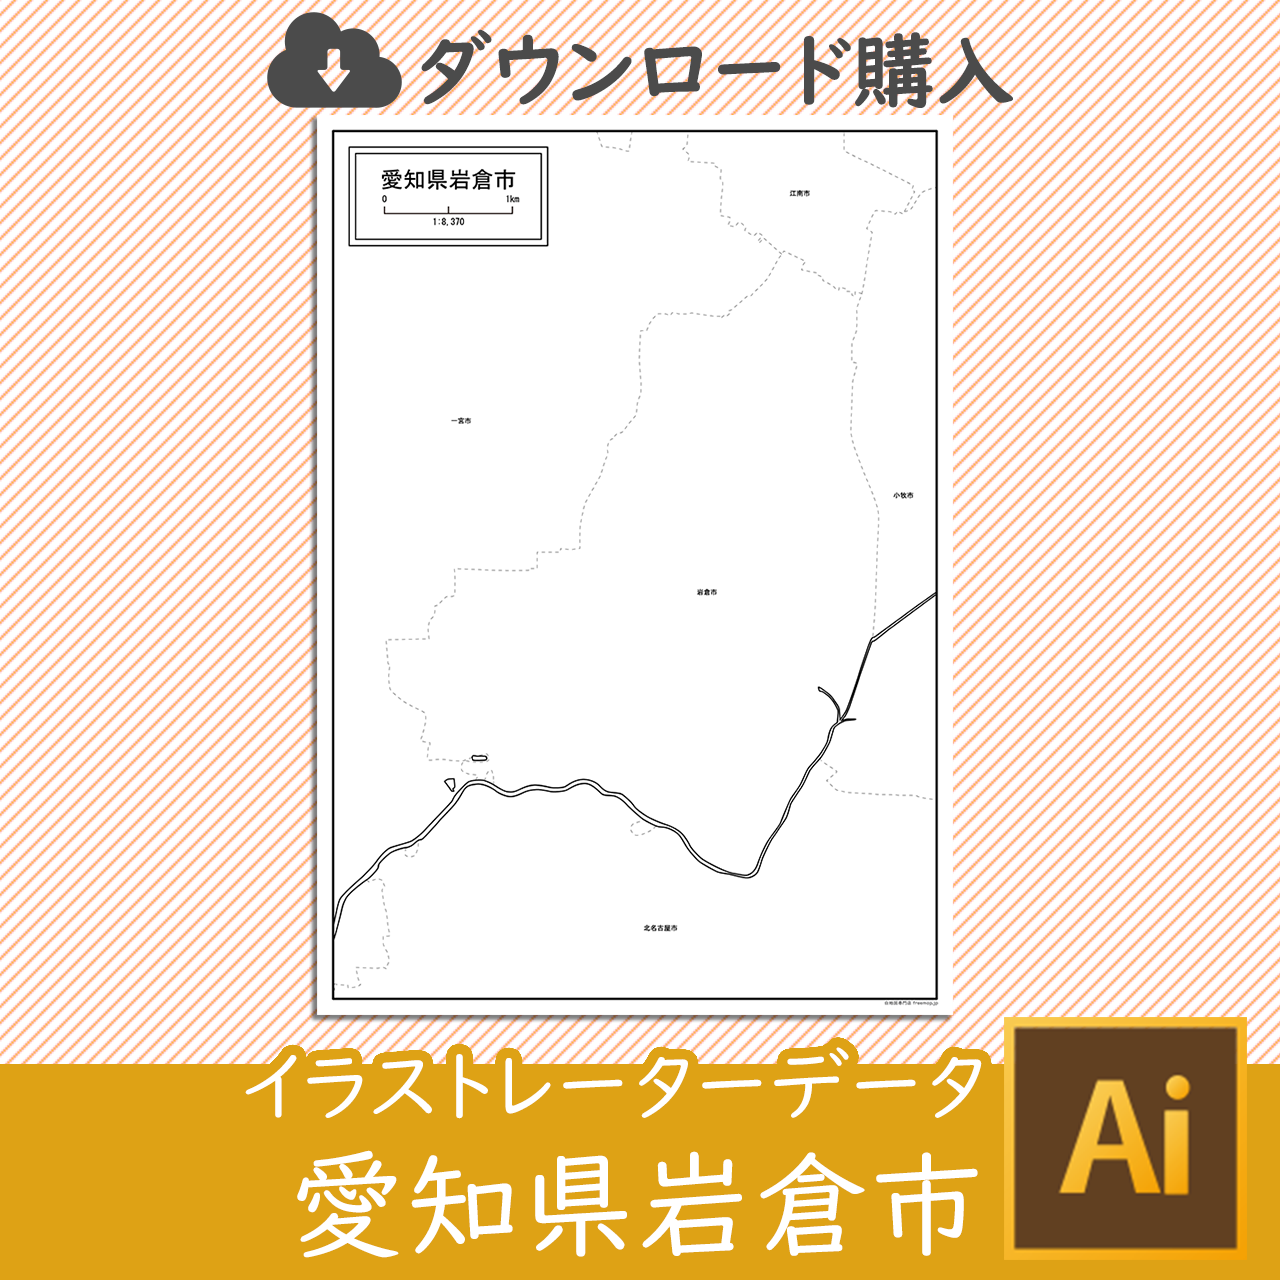 岩倉市のaiデータのサムネイル画像